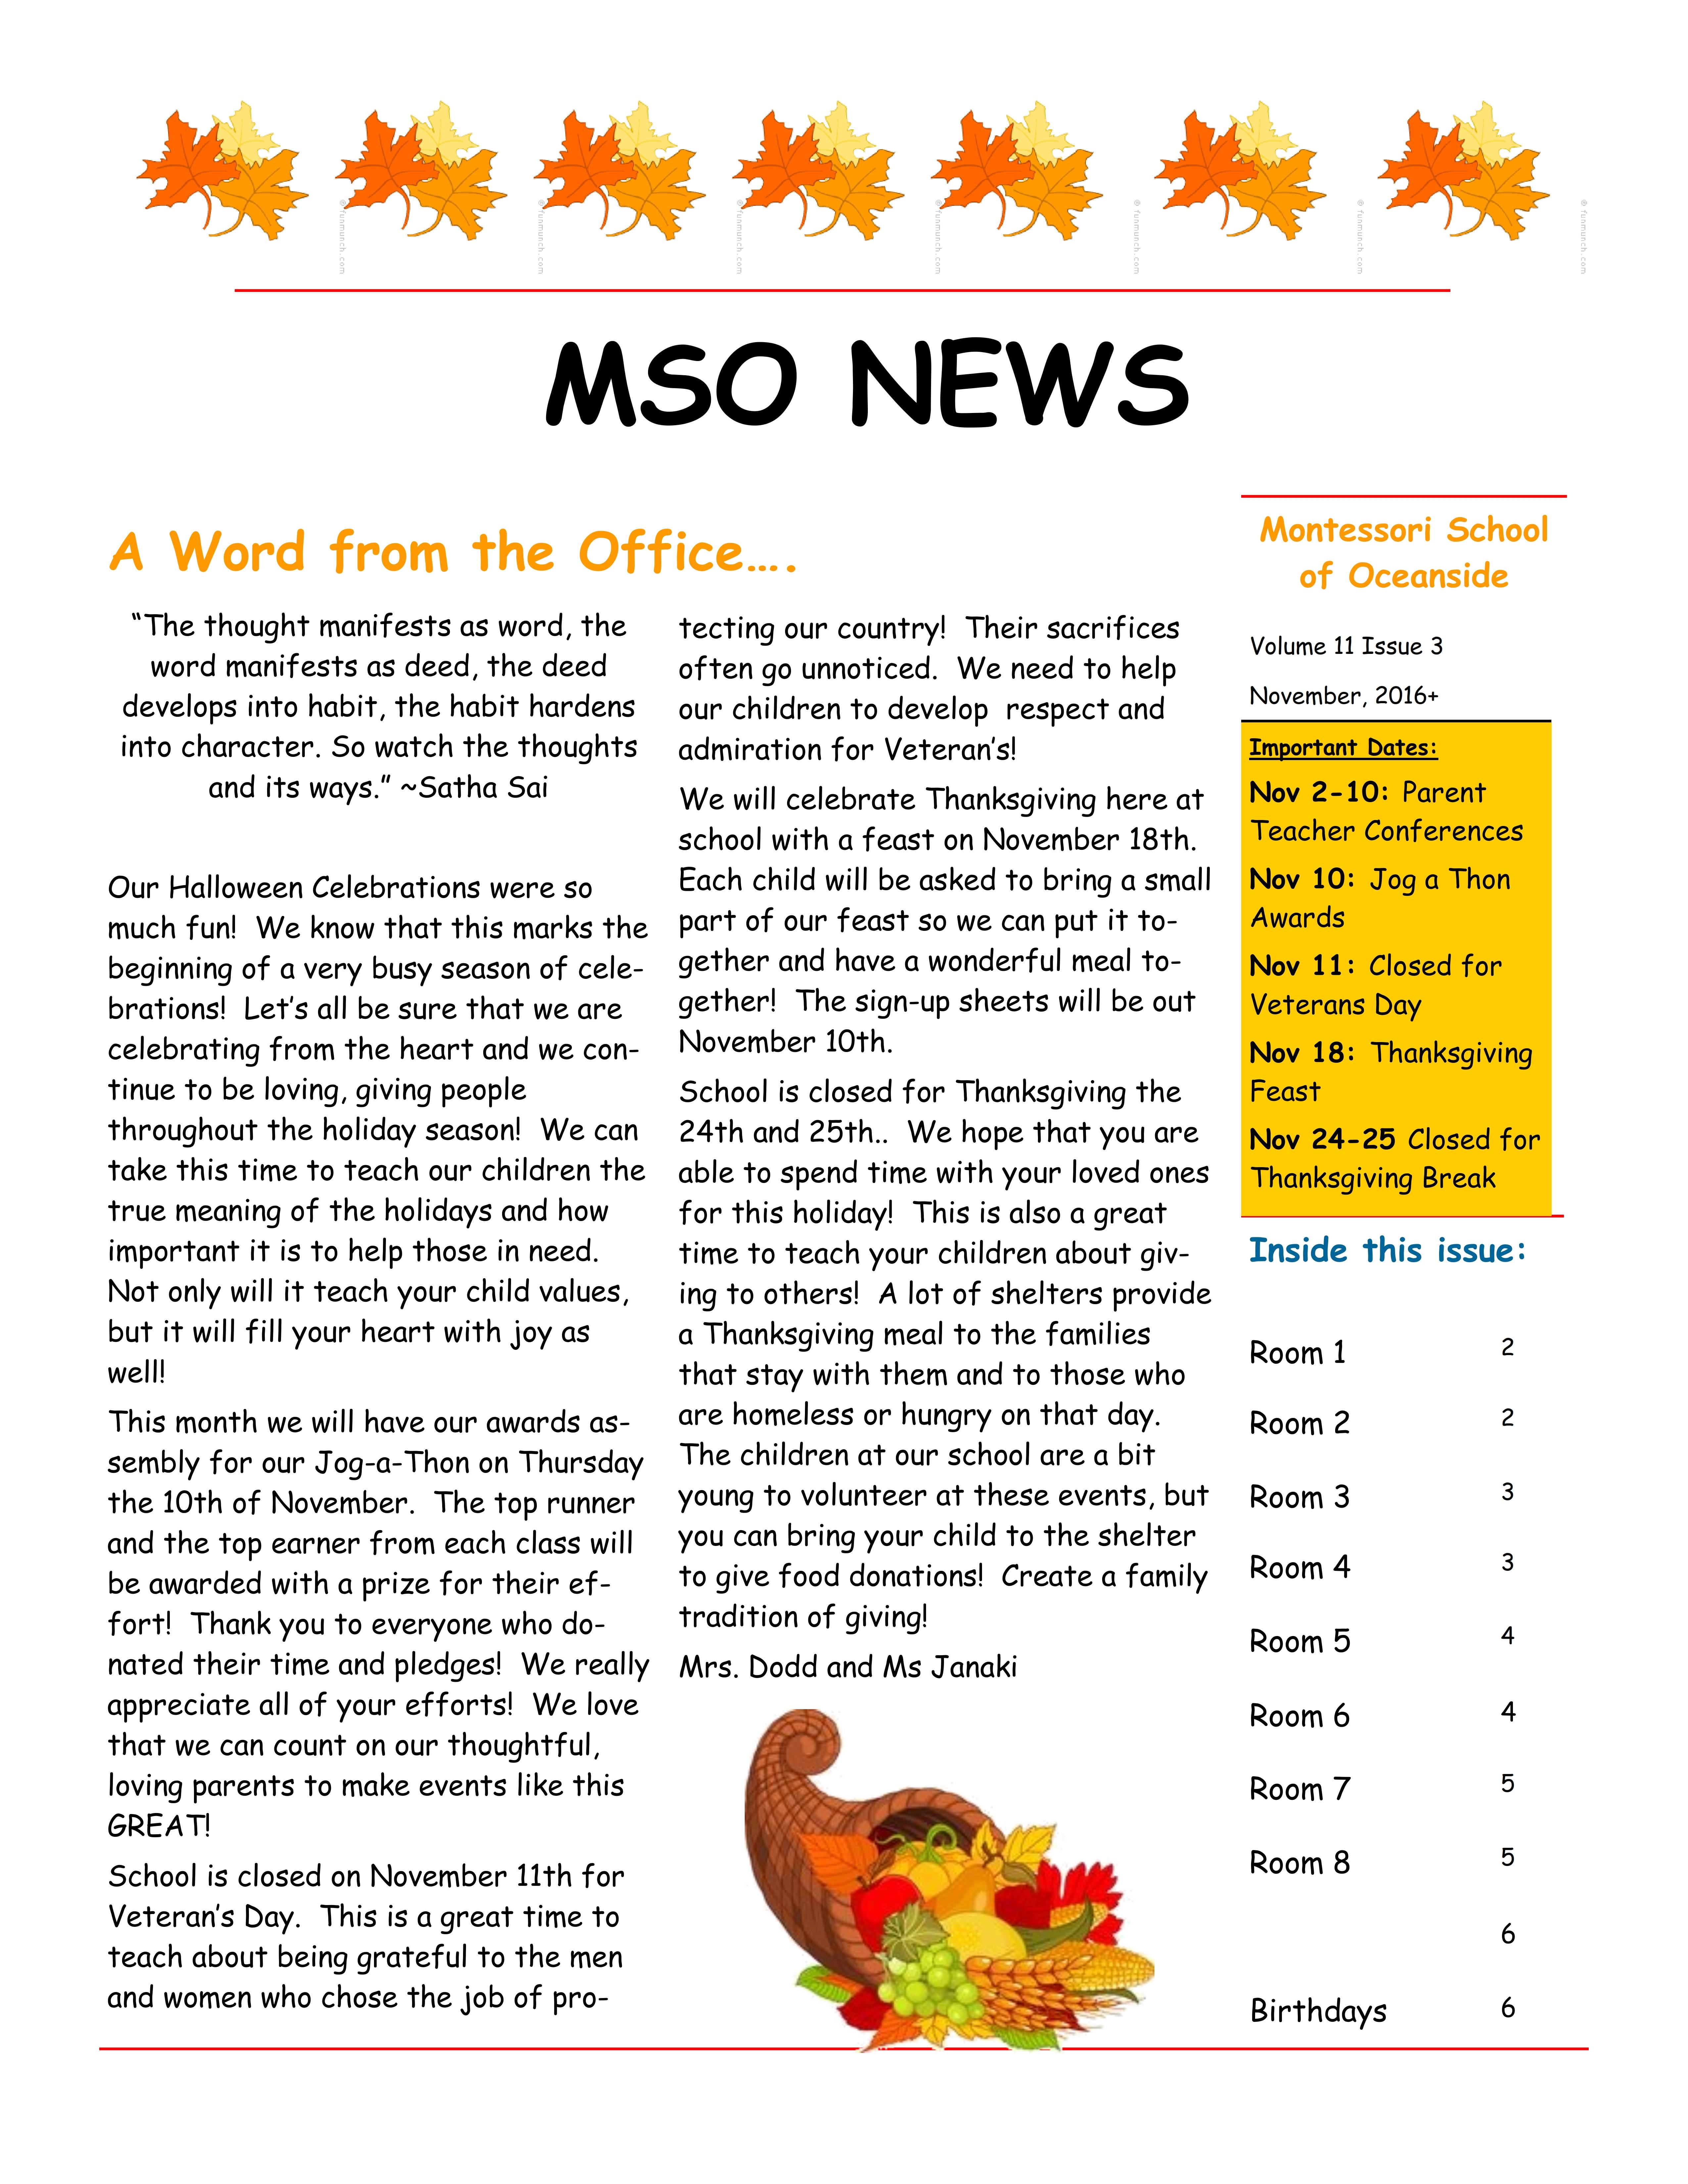 MSO November 2016 Newsletter | Montessori School of Oceanside